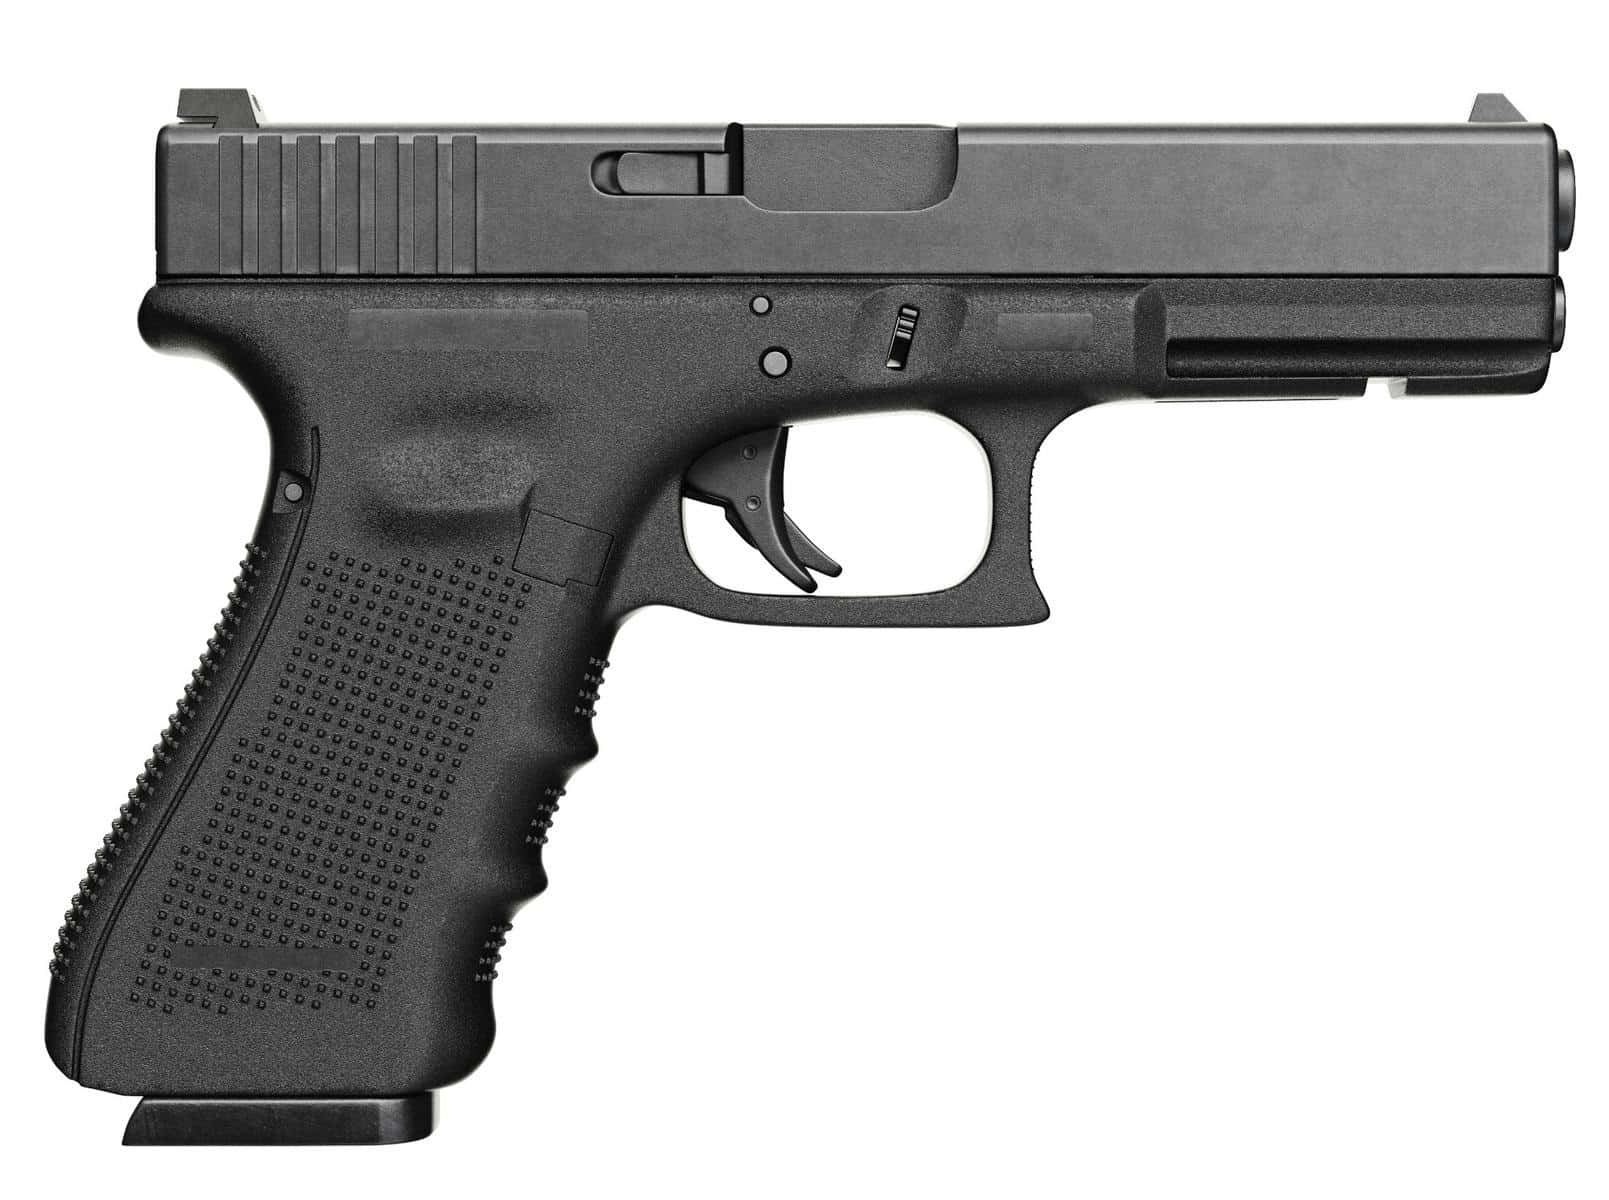 A Black Glock Pistol On A White Background